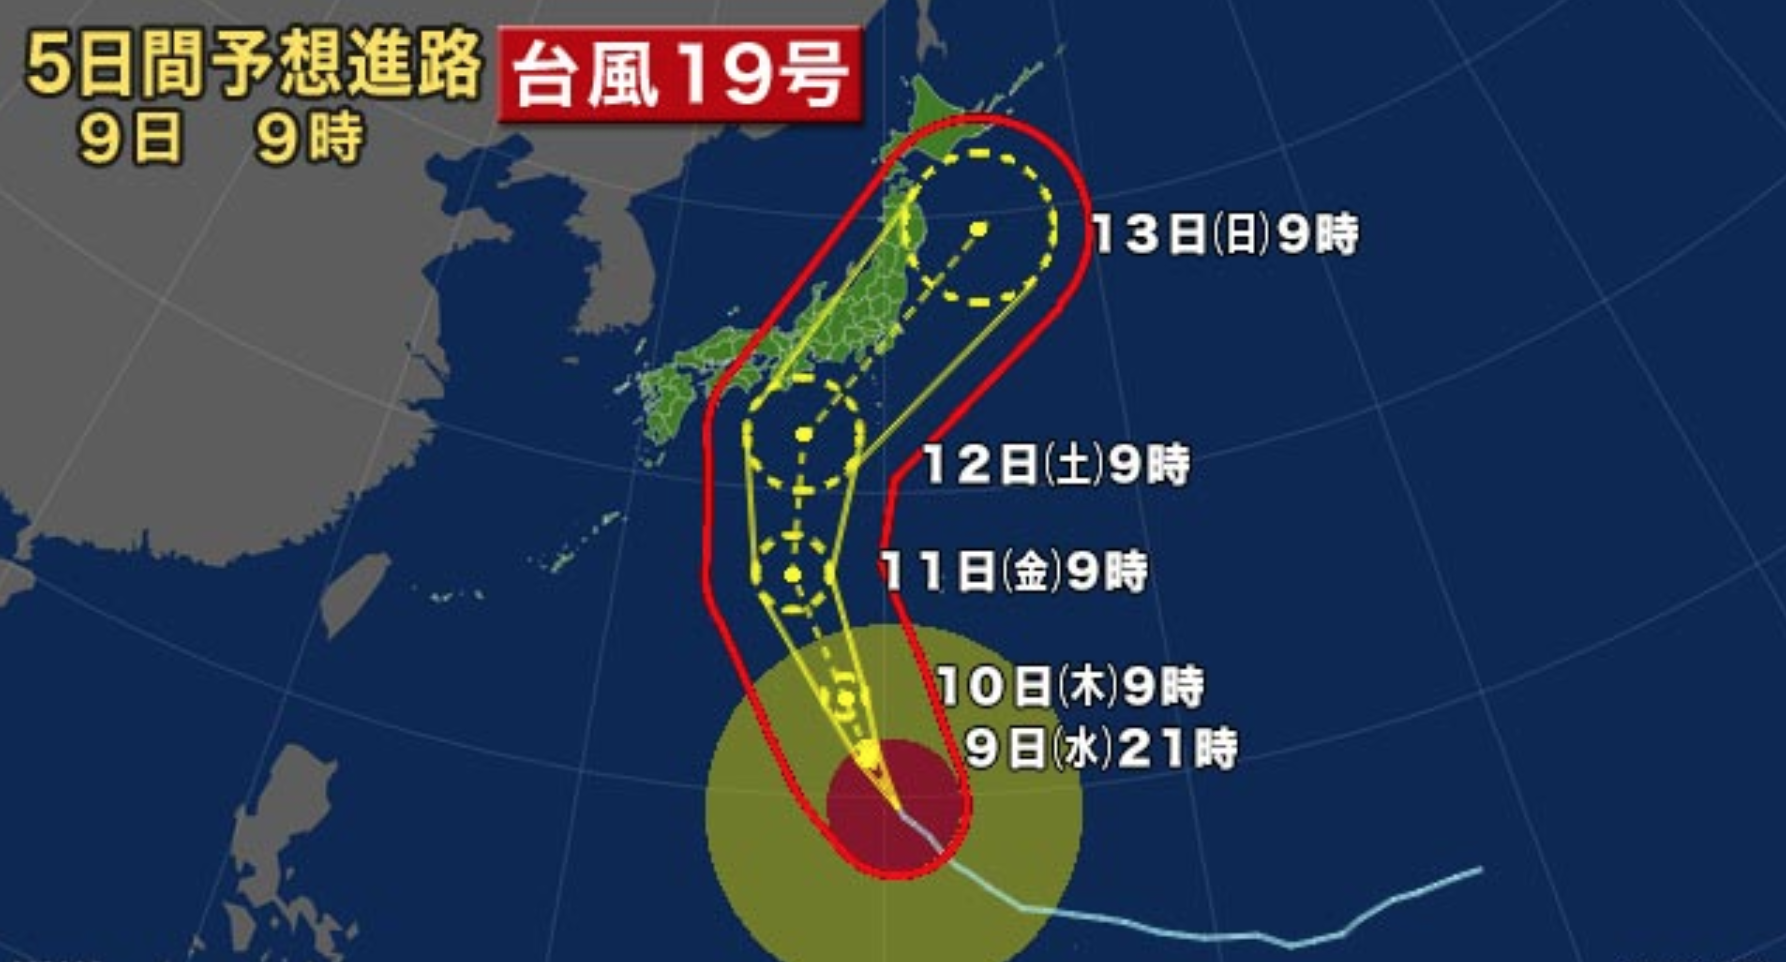 台風 19 号 進路 大阪